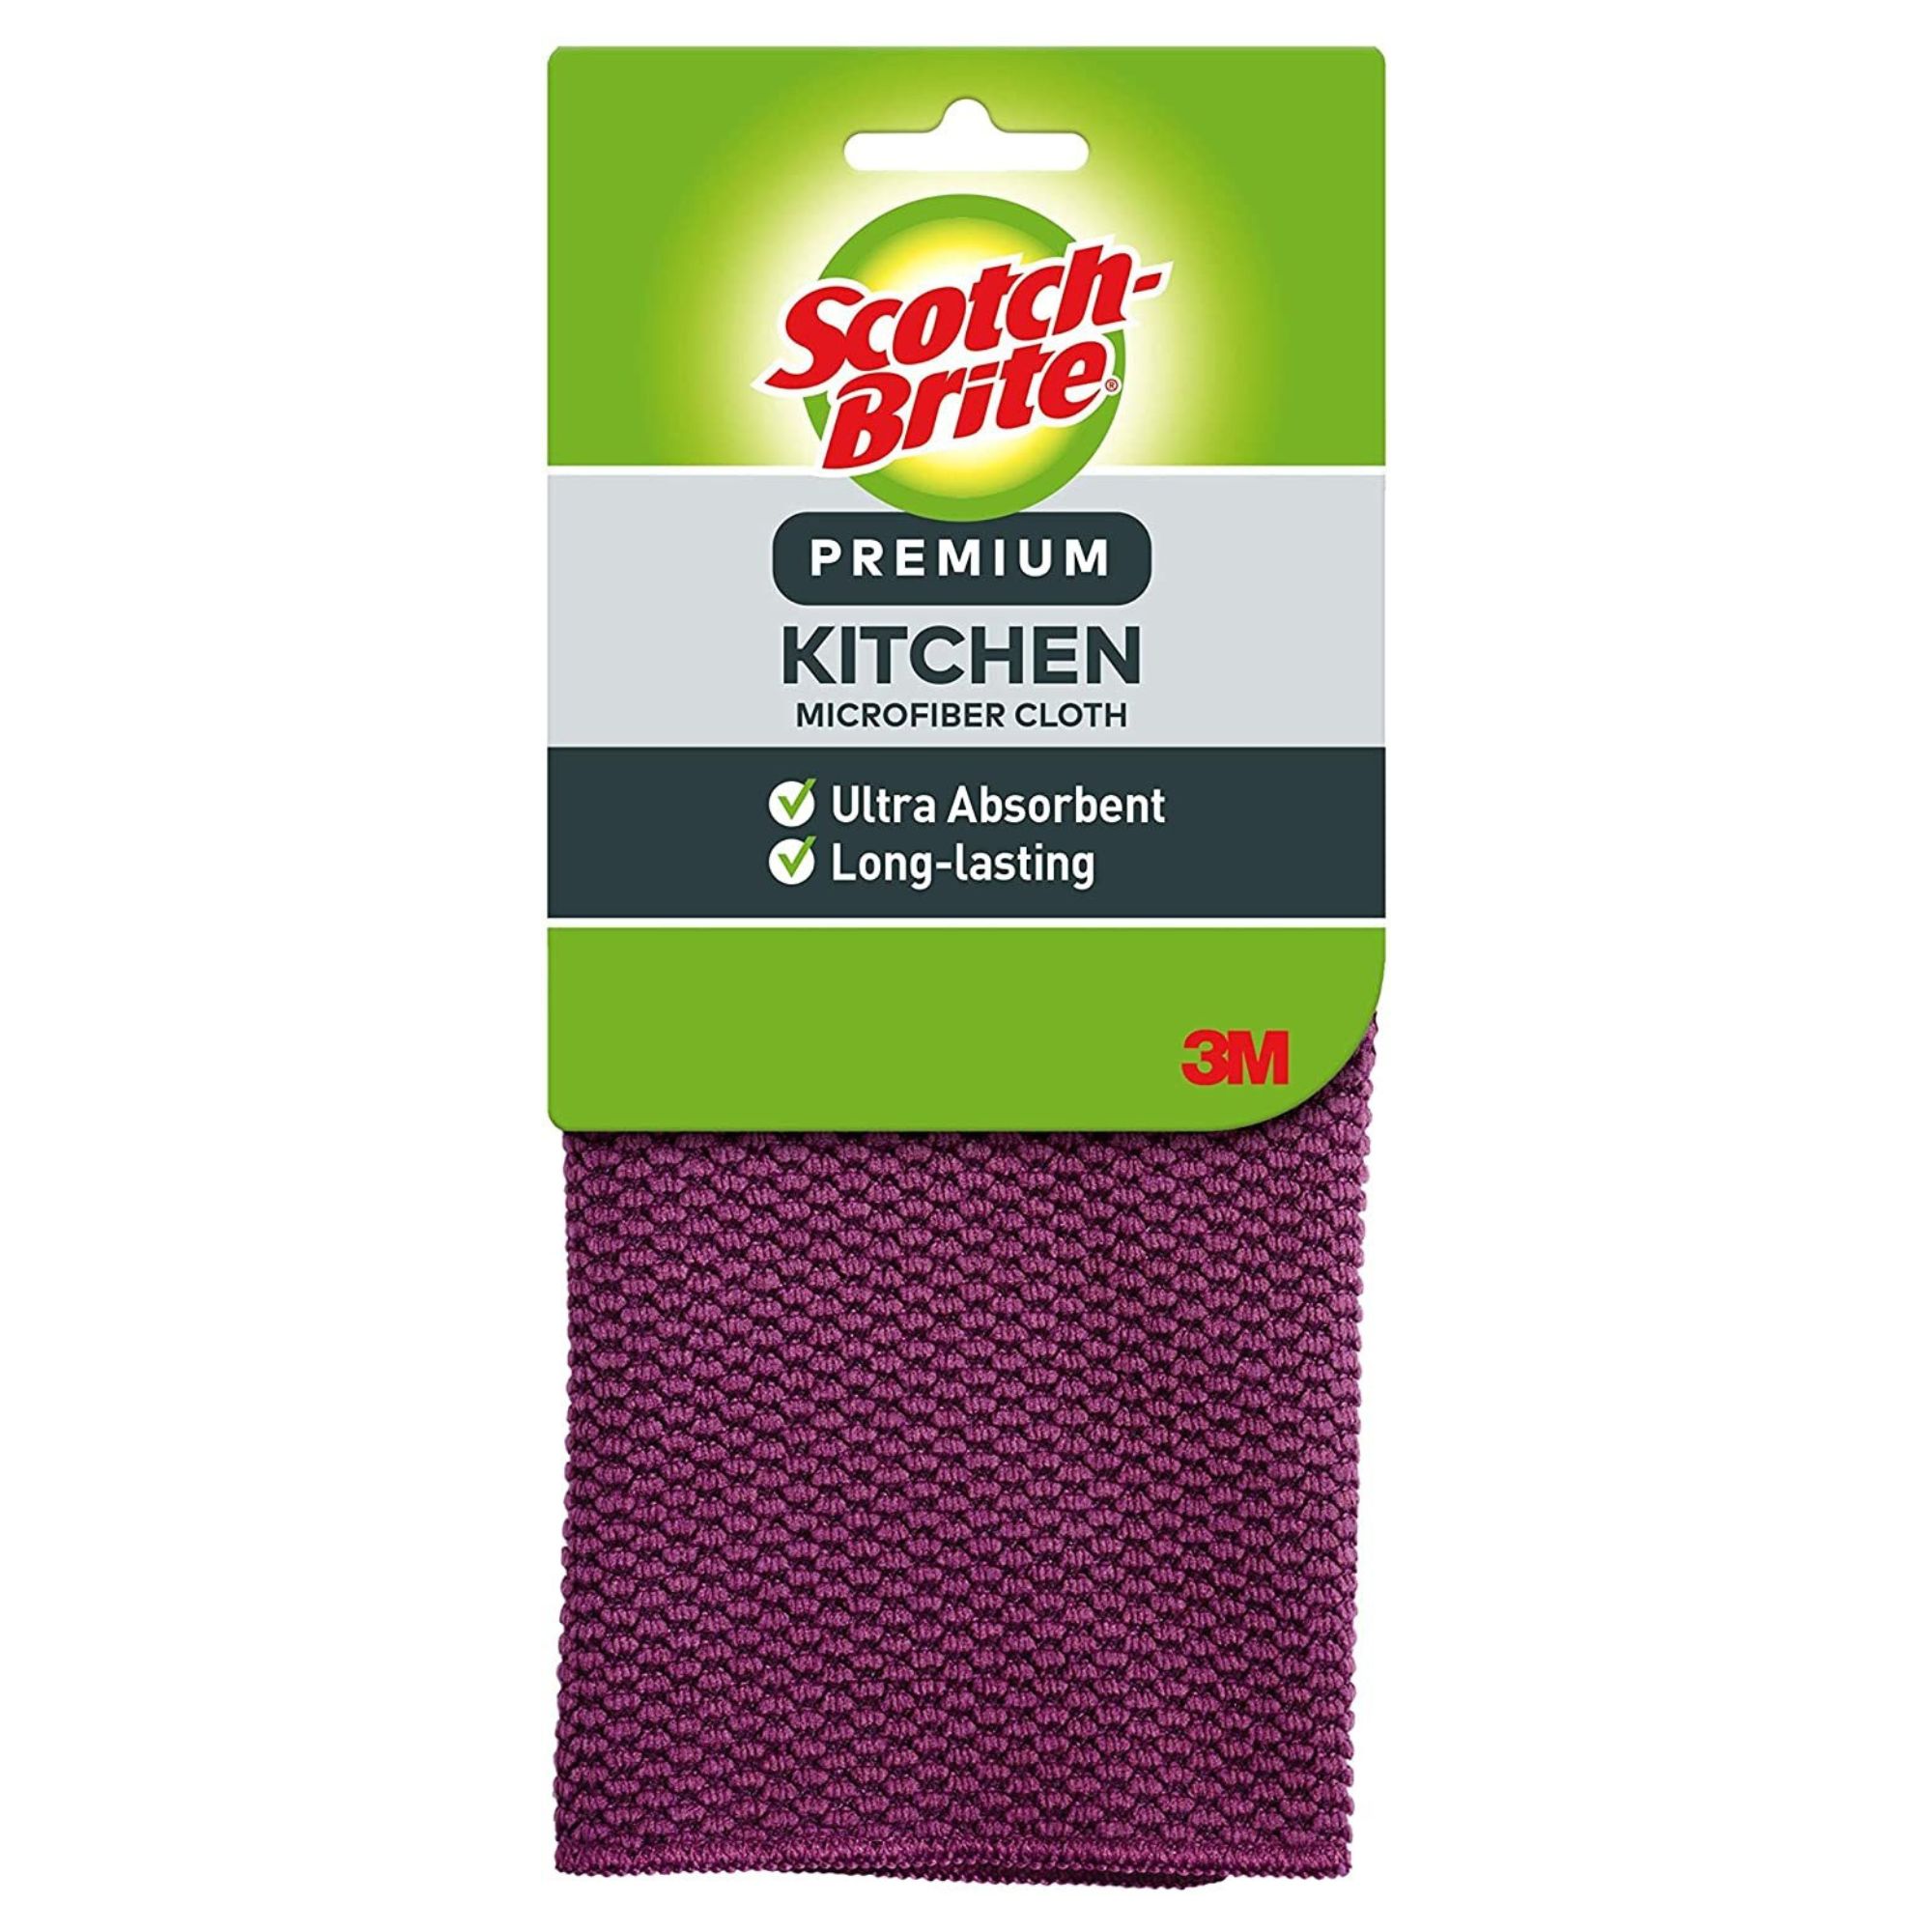 3M 9035 Scotch-Brite Premium Kitchen Microfiber Cloth